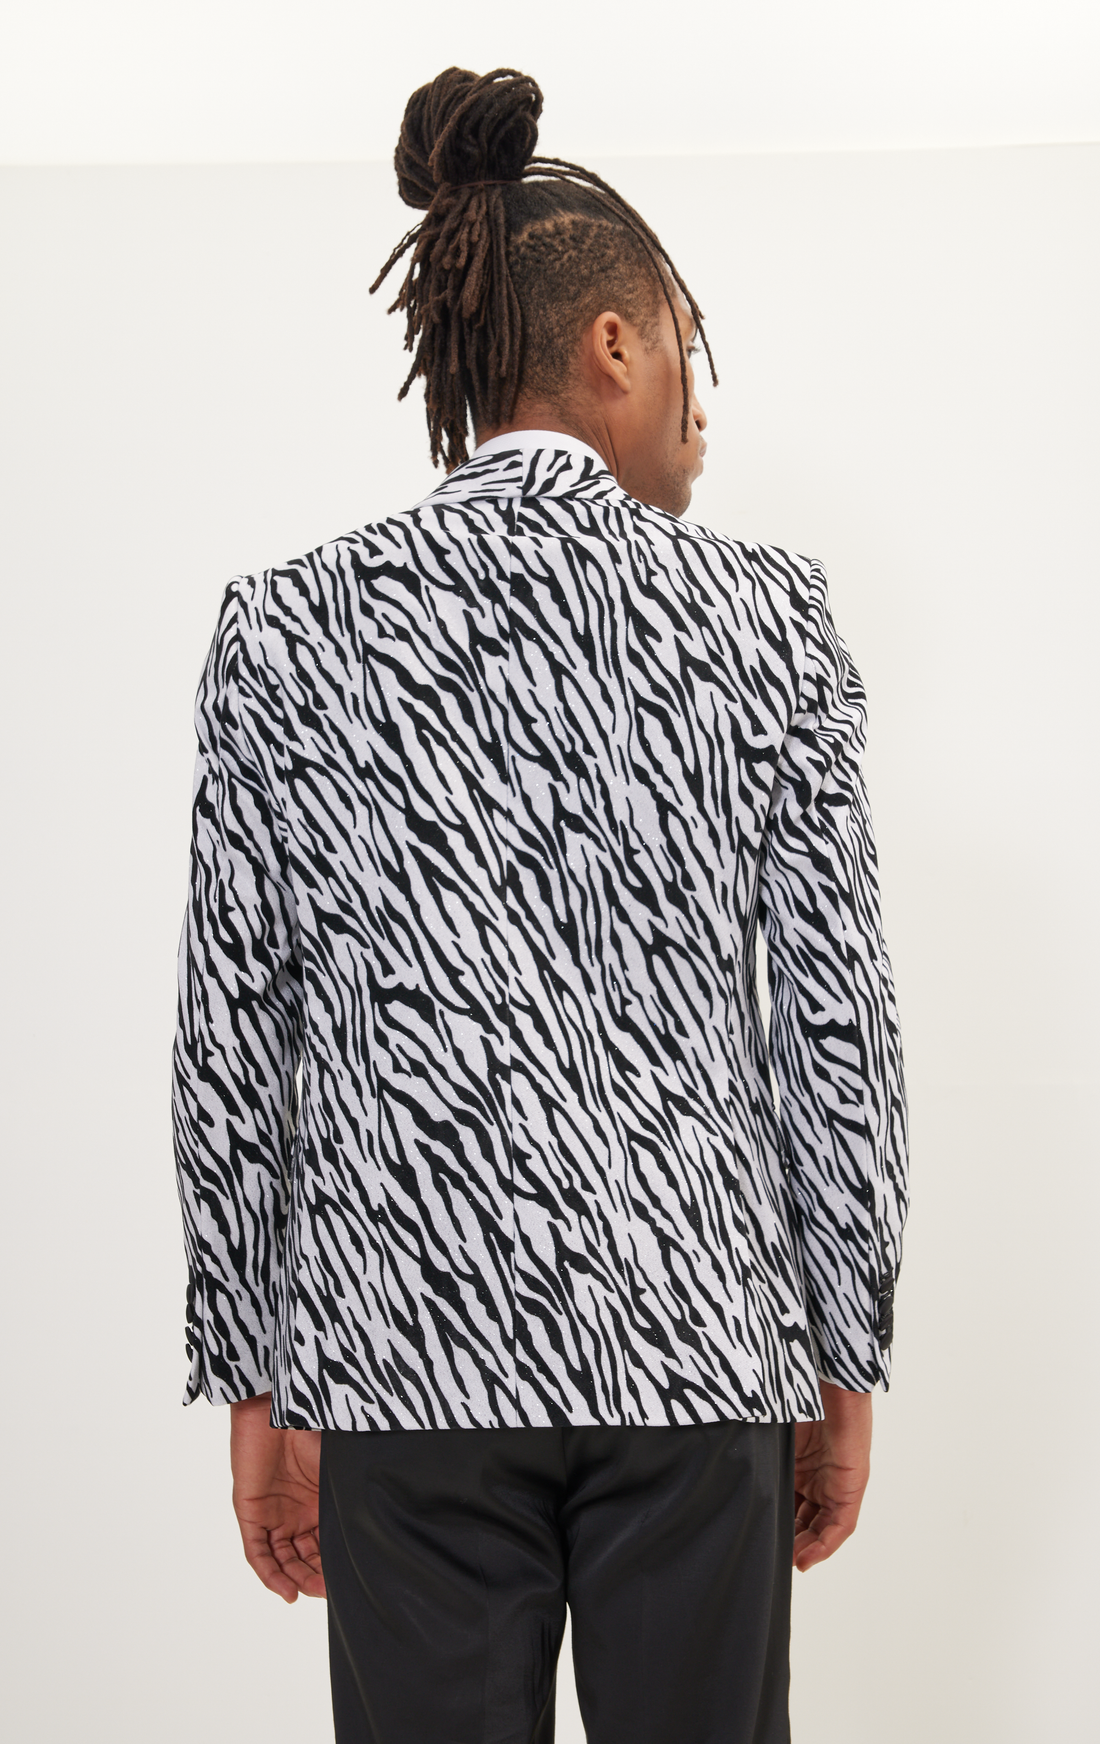 Zebra Velvet Flocking Glittered Tuxedo Jacket - White